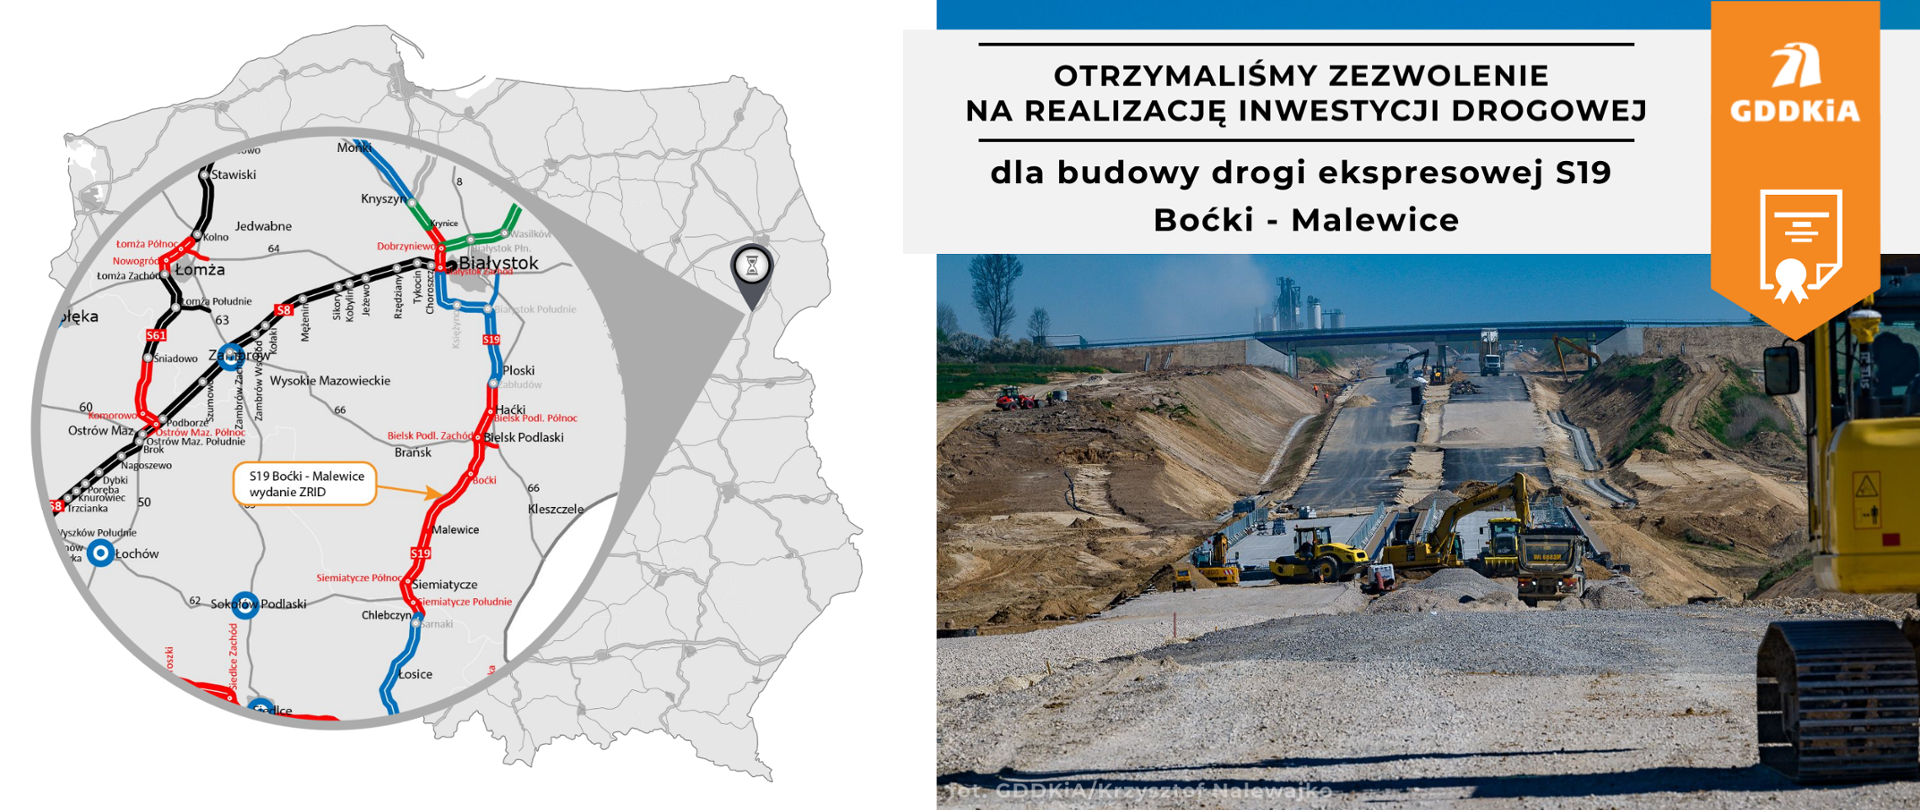 Infografika informująca o wydaniu decyzji ZRID dla drogi ekspresowej S19 Boćki - Malewice. Po lewej kontur mapy Polski z zaznaczonym odcinkiem S19 z wydaną decyzją ZRID. Po prawej zdjęcie z budowy odcinka S19. Maszyny budowlane układające obie jezdnie drogi ekspresowej. Widać pierwsze warstwy podbudowy pod nową drogę. W tle wiadukt drogi lokalnej przechodzący nad budową.